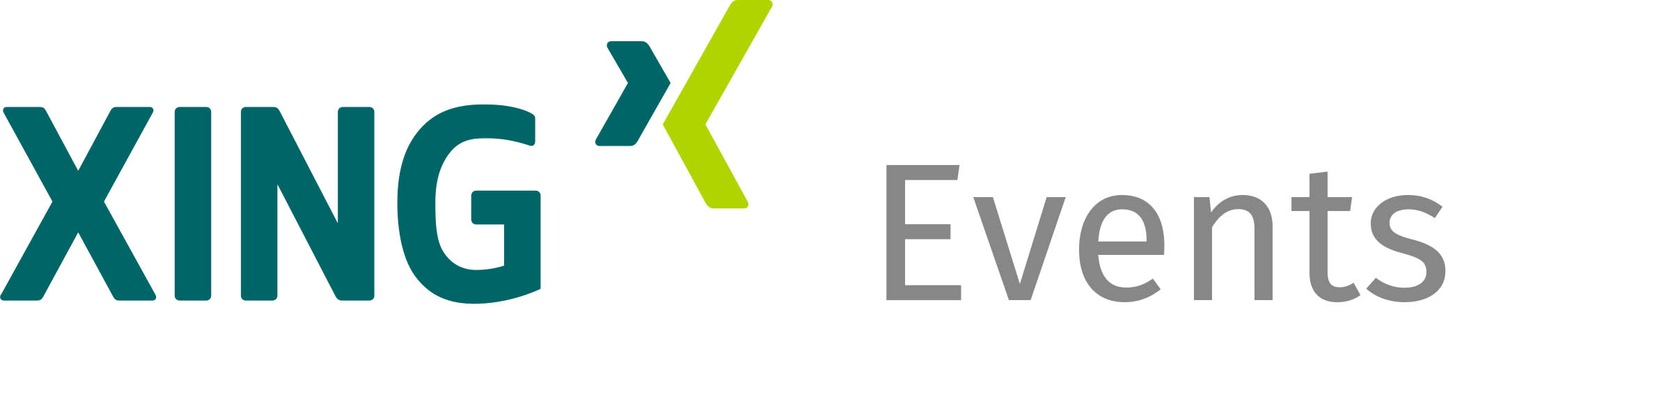 VExCon 2021 – XING Events führt „zurück in die Zukunft der Eventbranche“